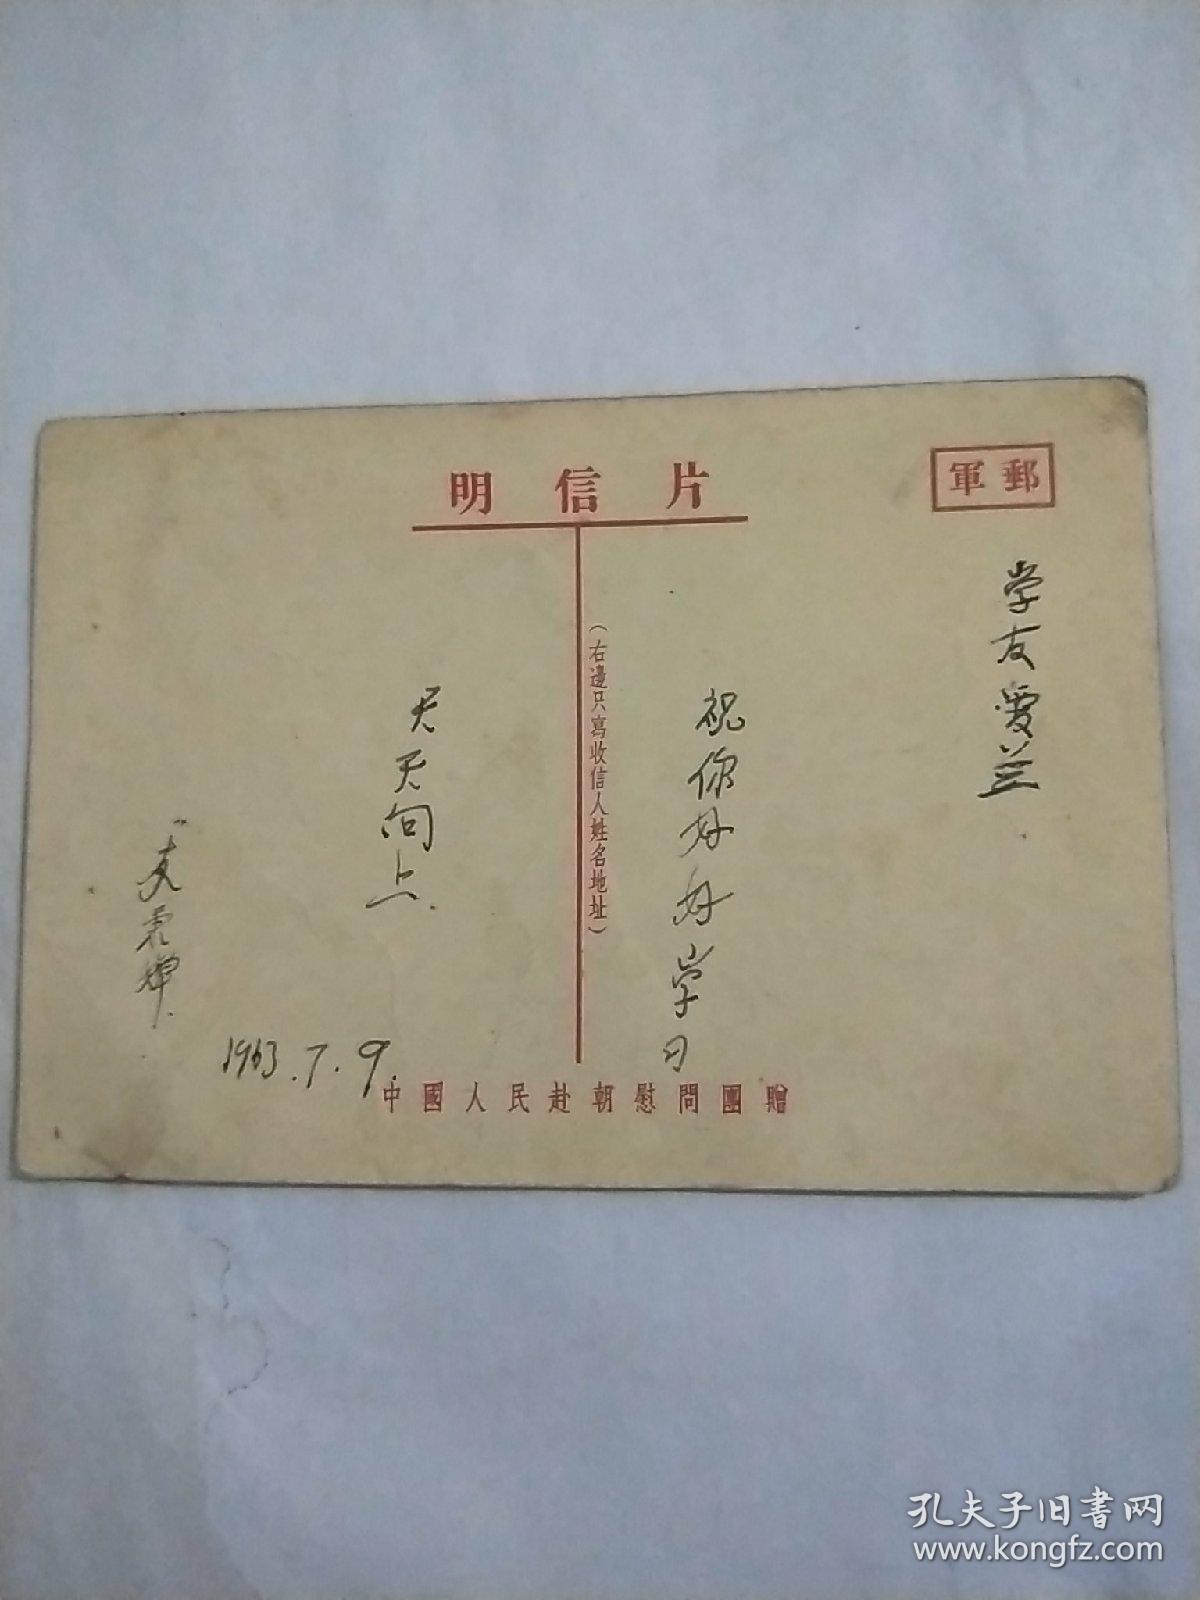 中国人民赴朝慰问团赠明信片。高级小学课本《自然》